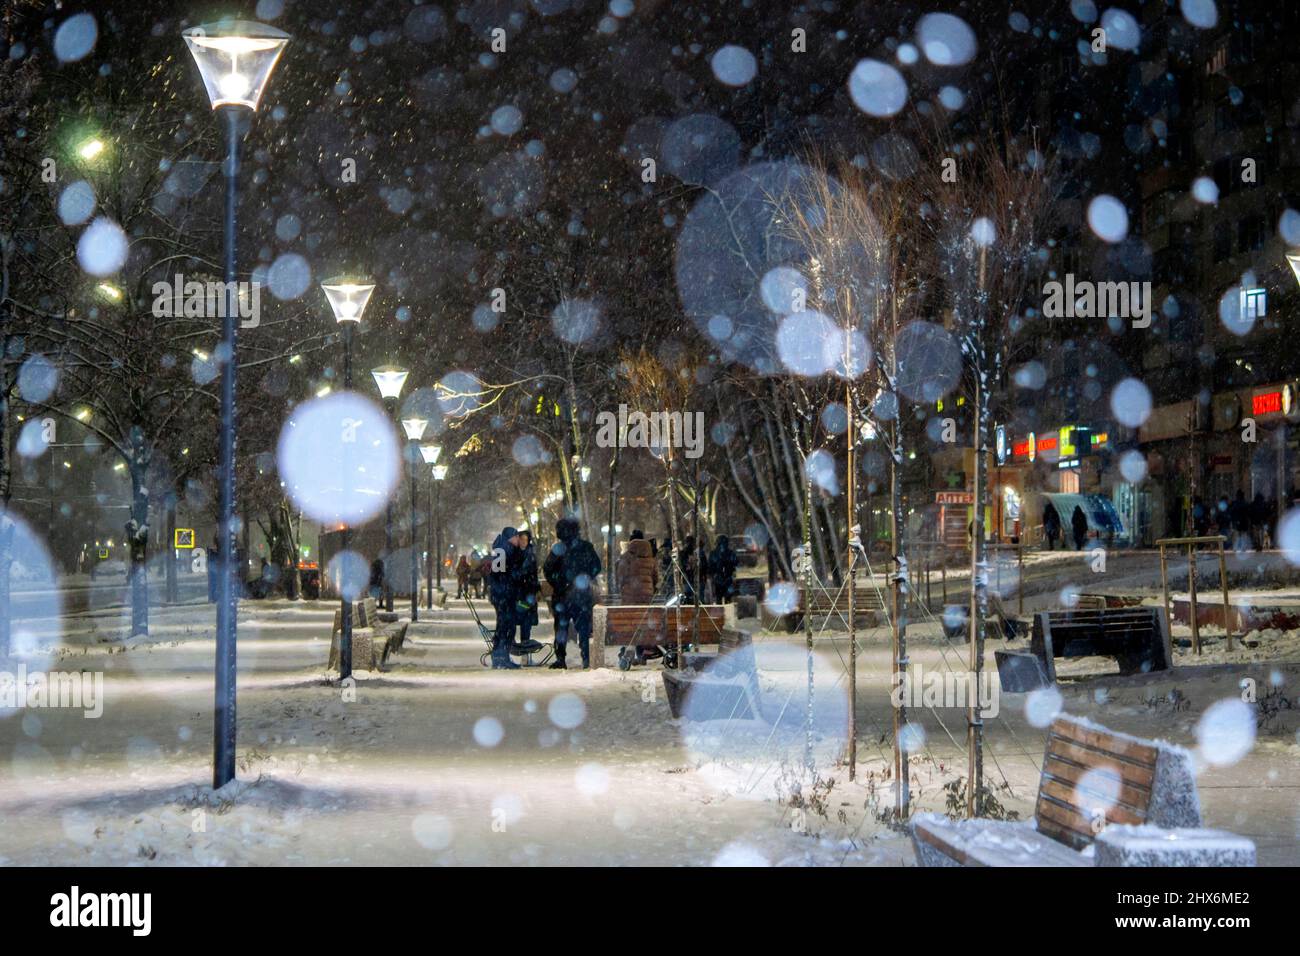 Vue sur la ville, lumières, chute de neige, nuit, rue, points bokeh Banque D'Images